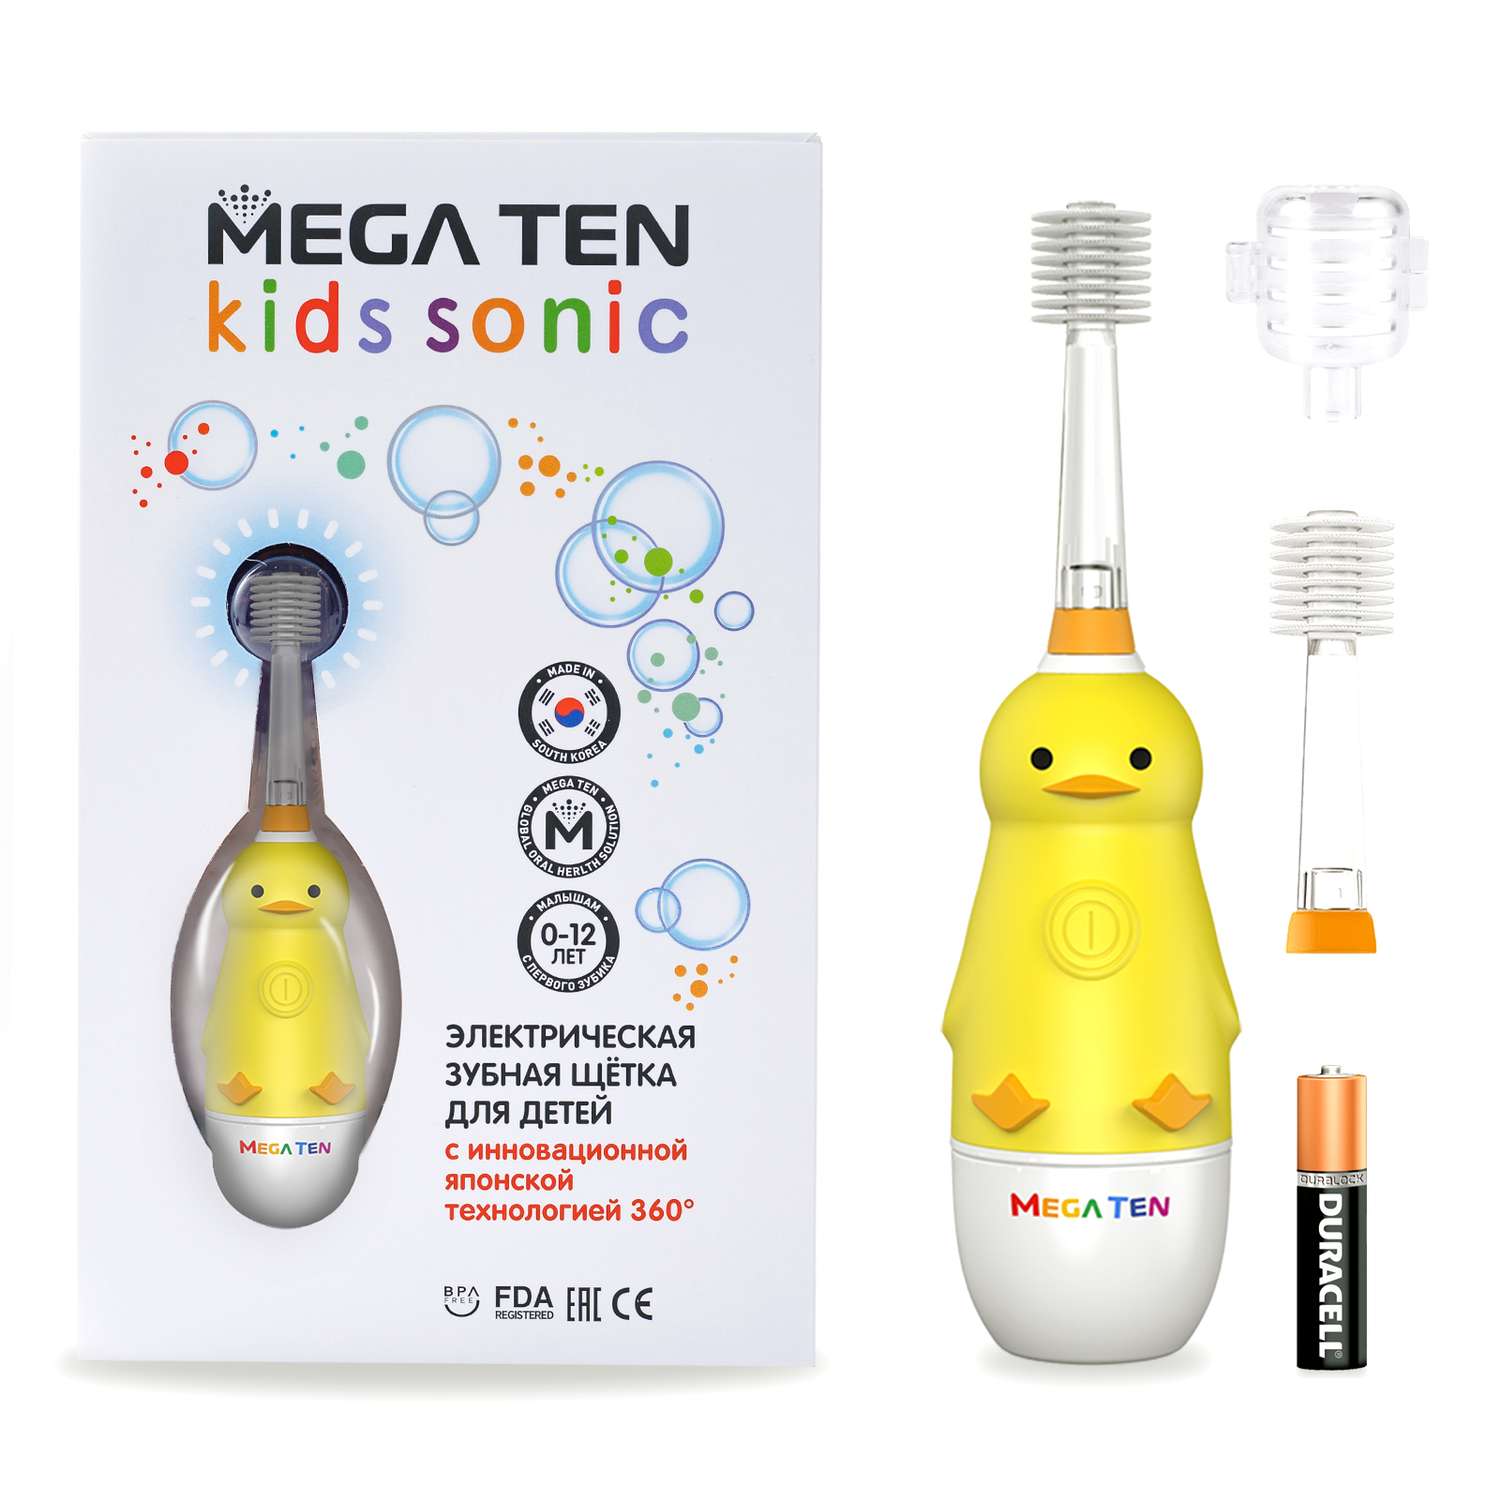 Зубная щетка электрическая Mega Ten kids sonic детская Утенок с дополнительной насадкой - фото 2